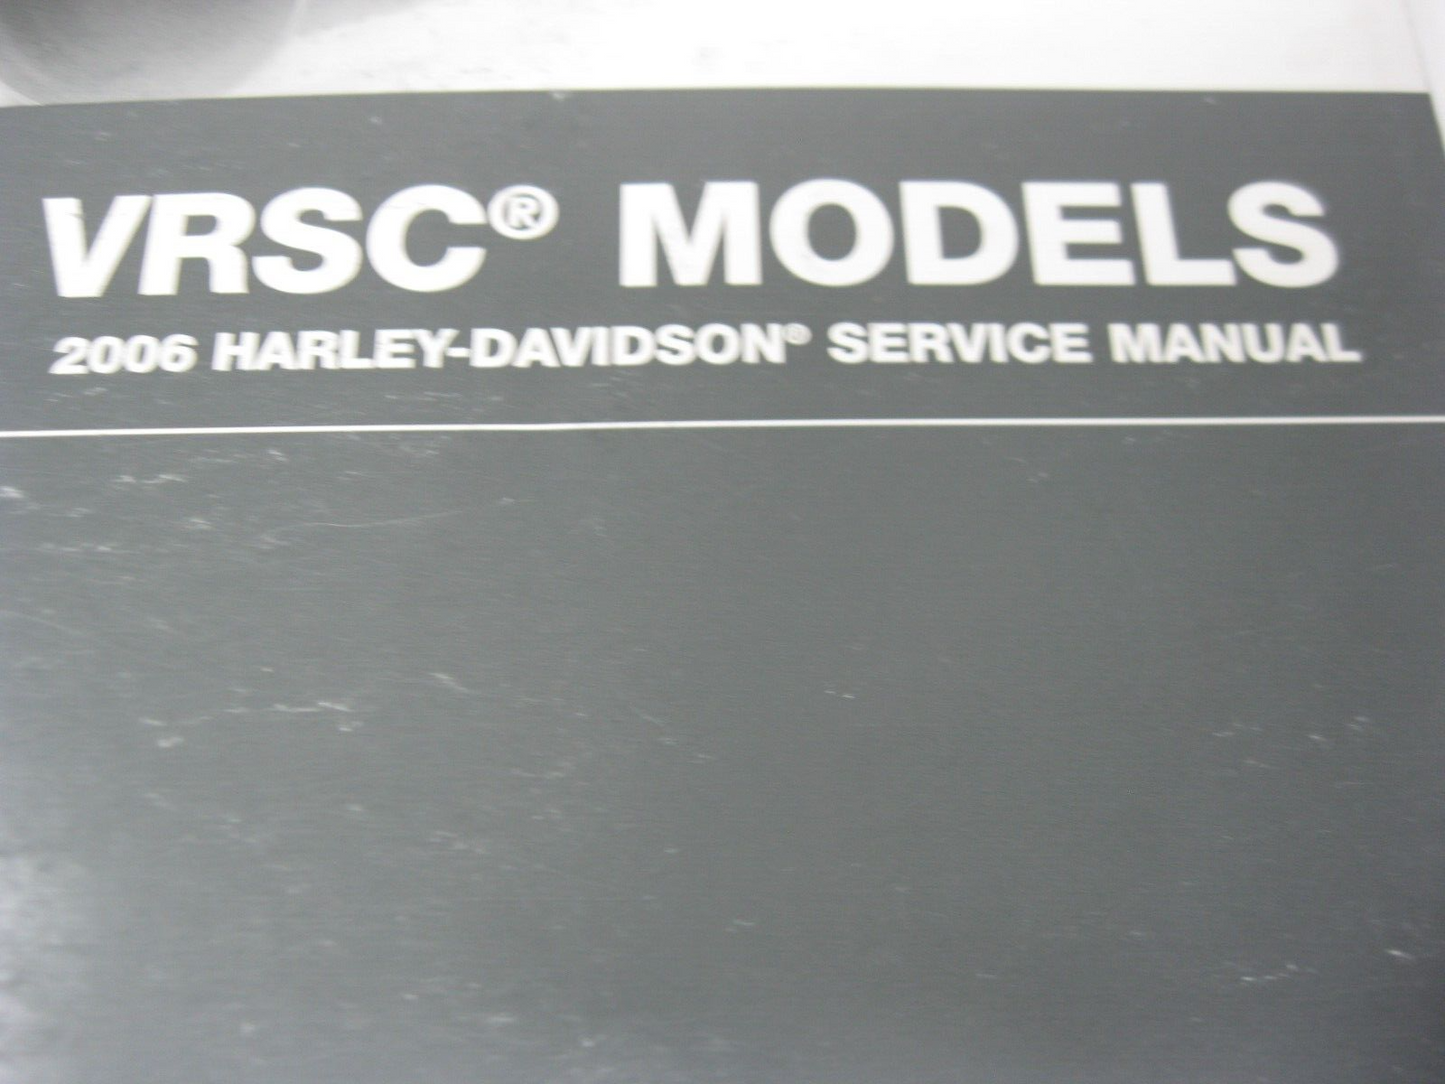 Harley-Davidson VRSC Models 2006 Service Manual 99501-06A